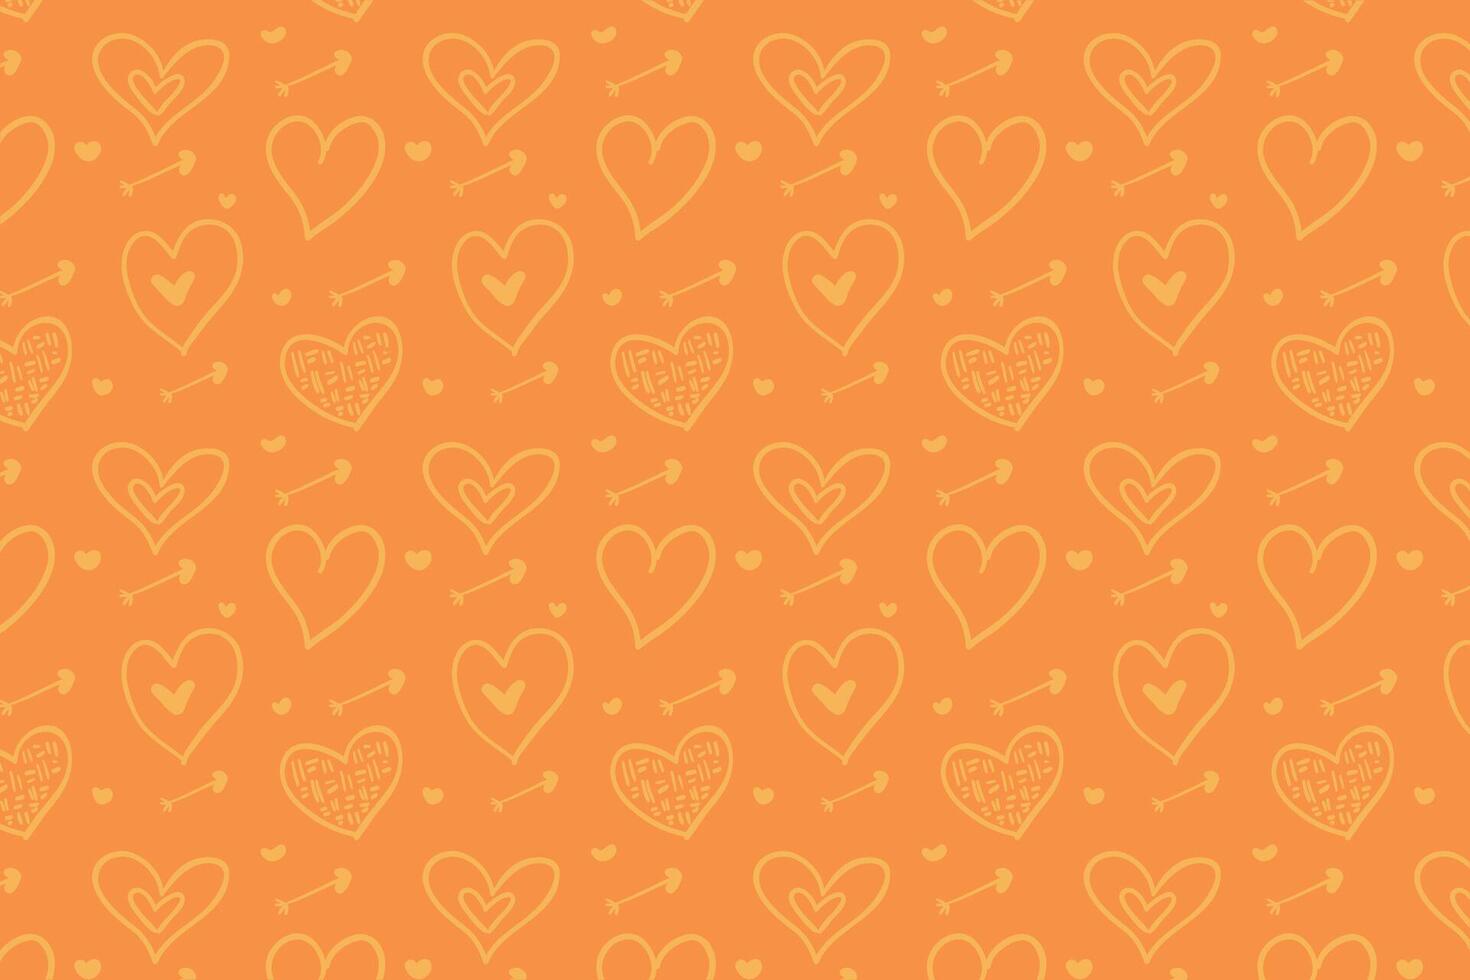 Vektor Liebe Herz Muster, Vektor Hand gezeichnet Valentinstag Tag Muster